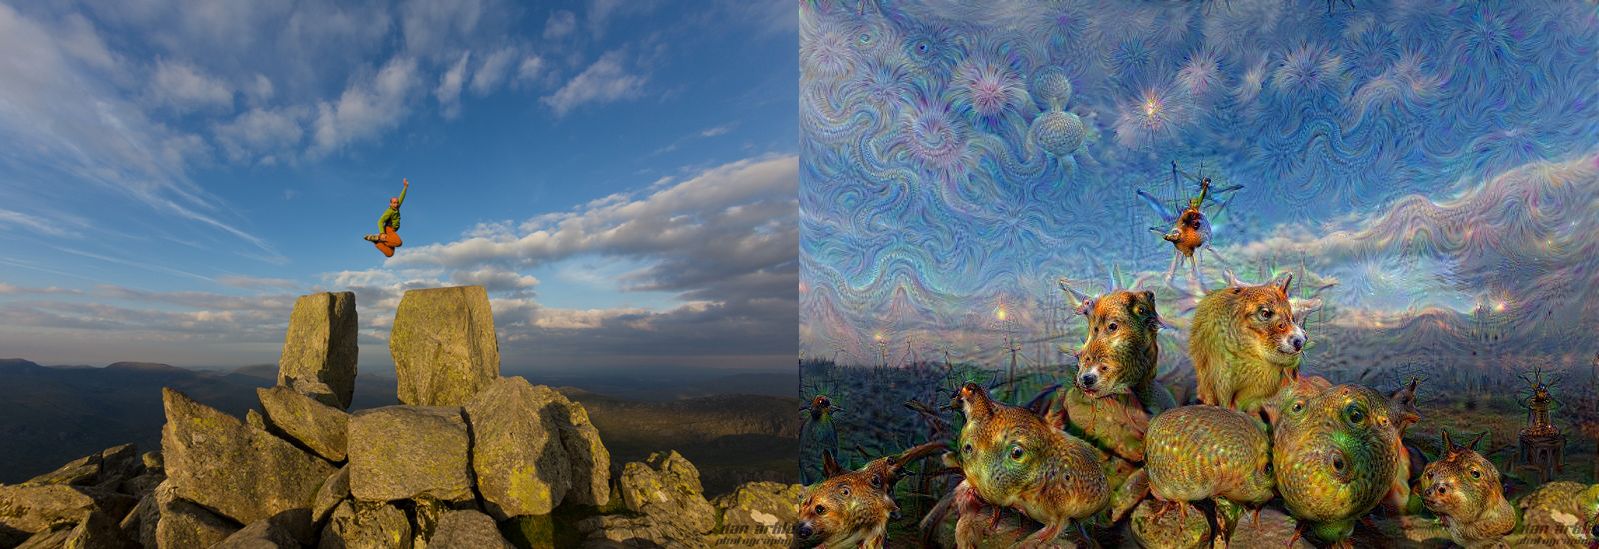 Горы в сюрреалистических фотографиях нейронной сети Deep Dream Google